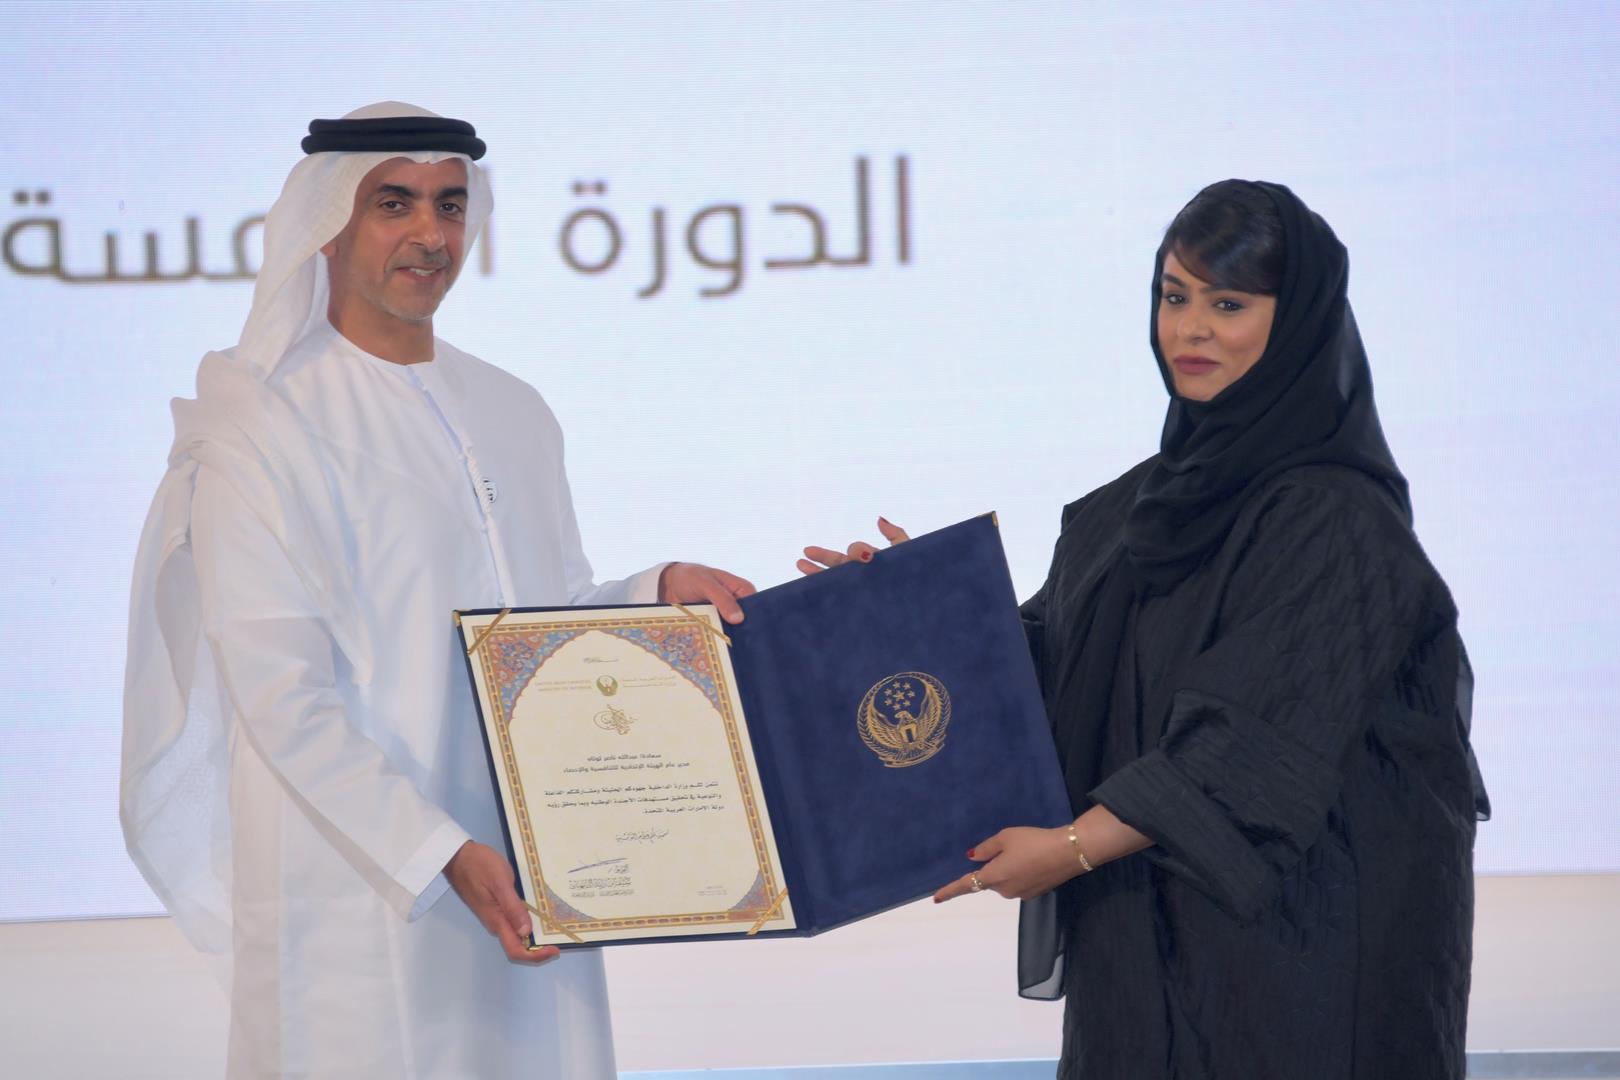 تكريم فرق وزارة الداخلية المشاركة بجائزة الشيخ محمد بن راشد للأداء الحكومي المتميز